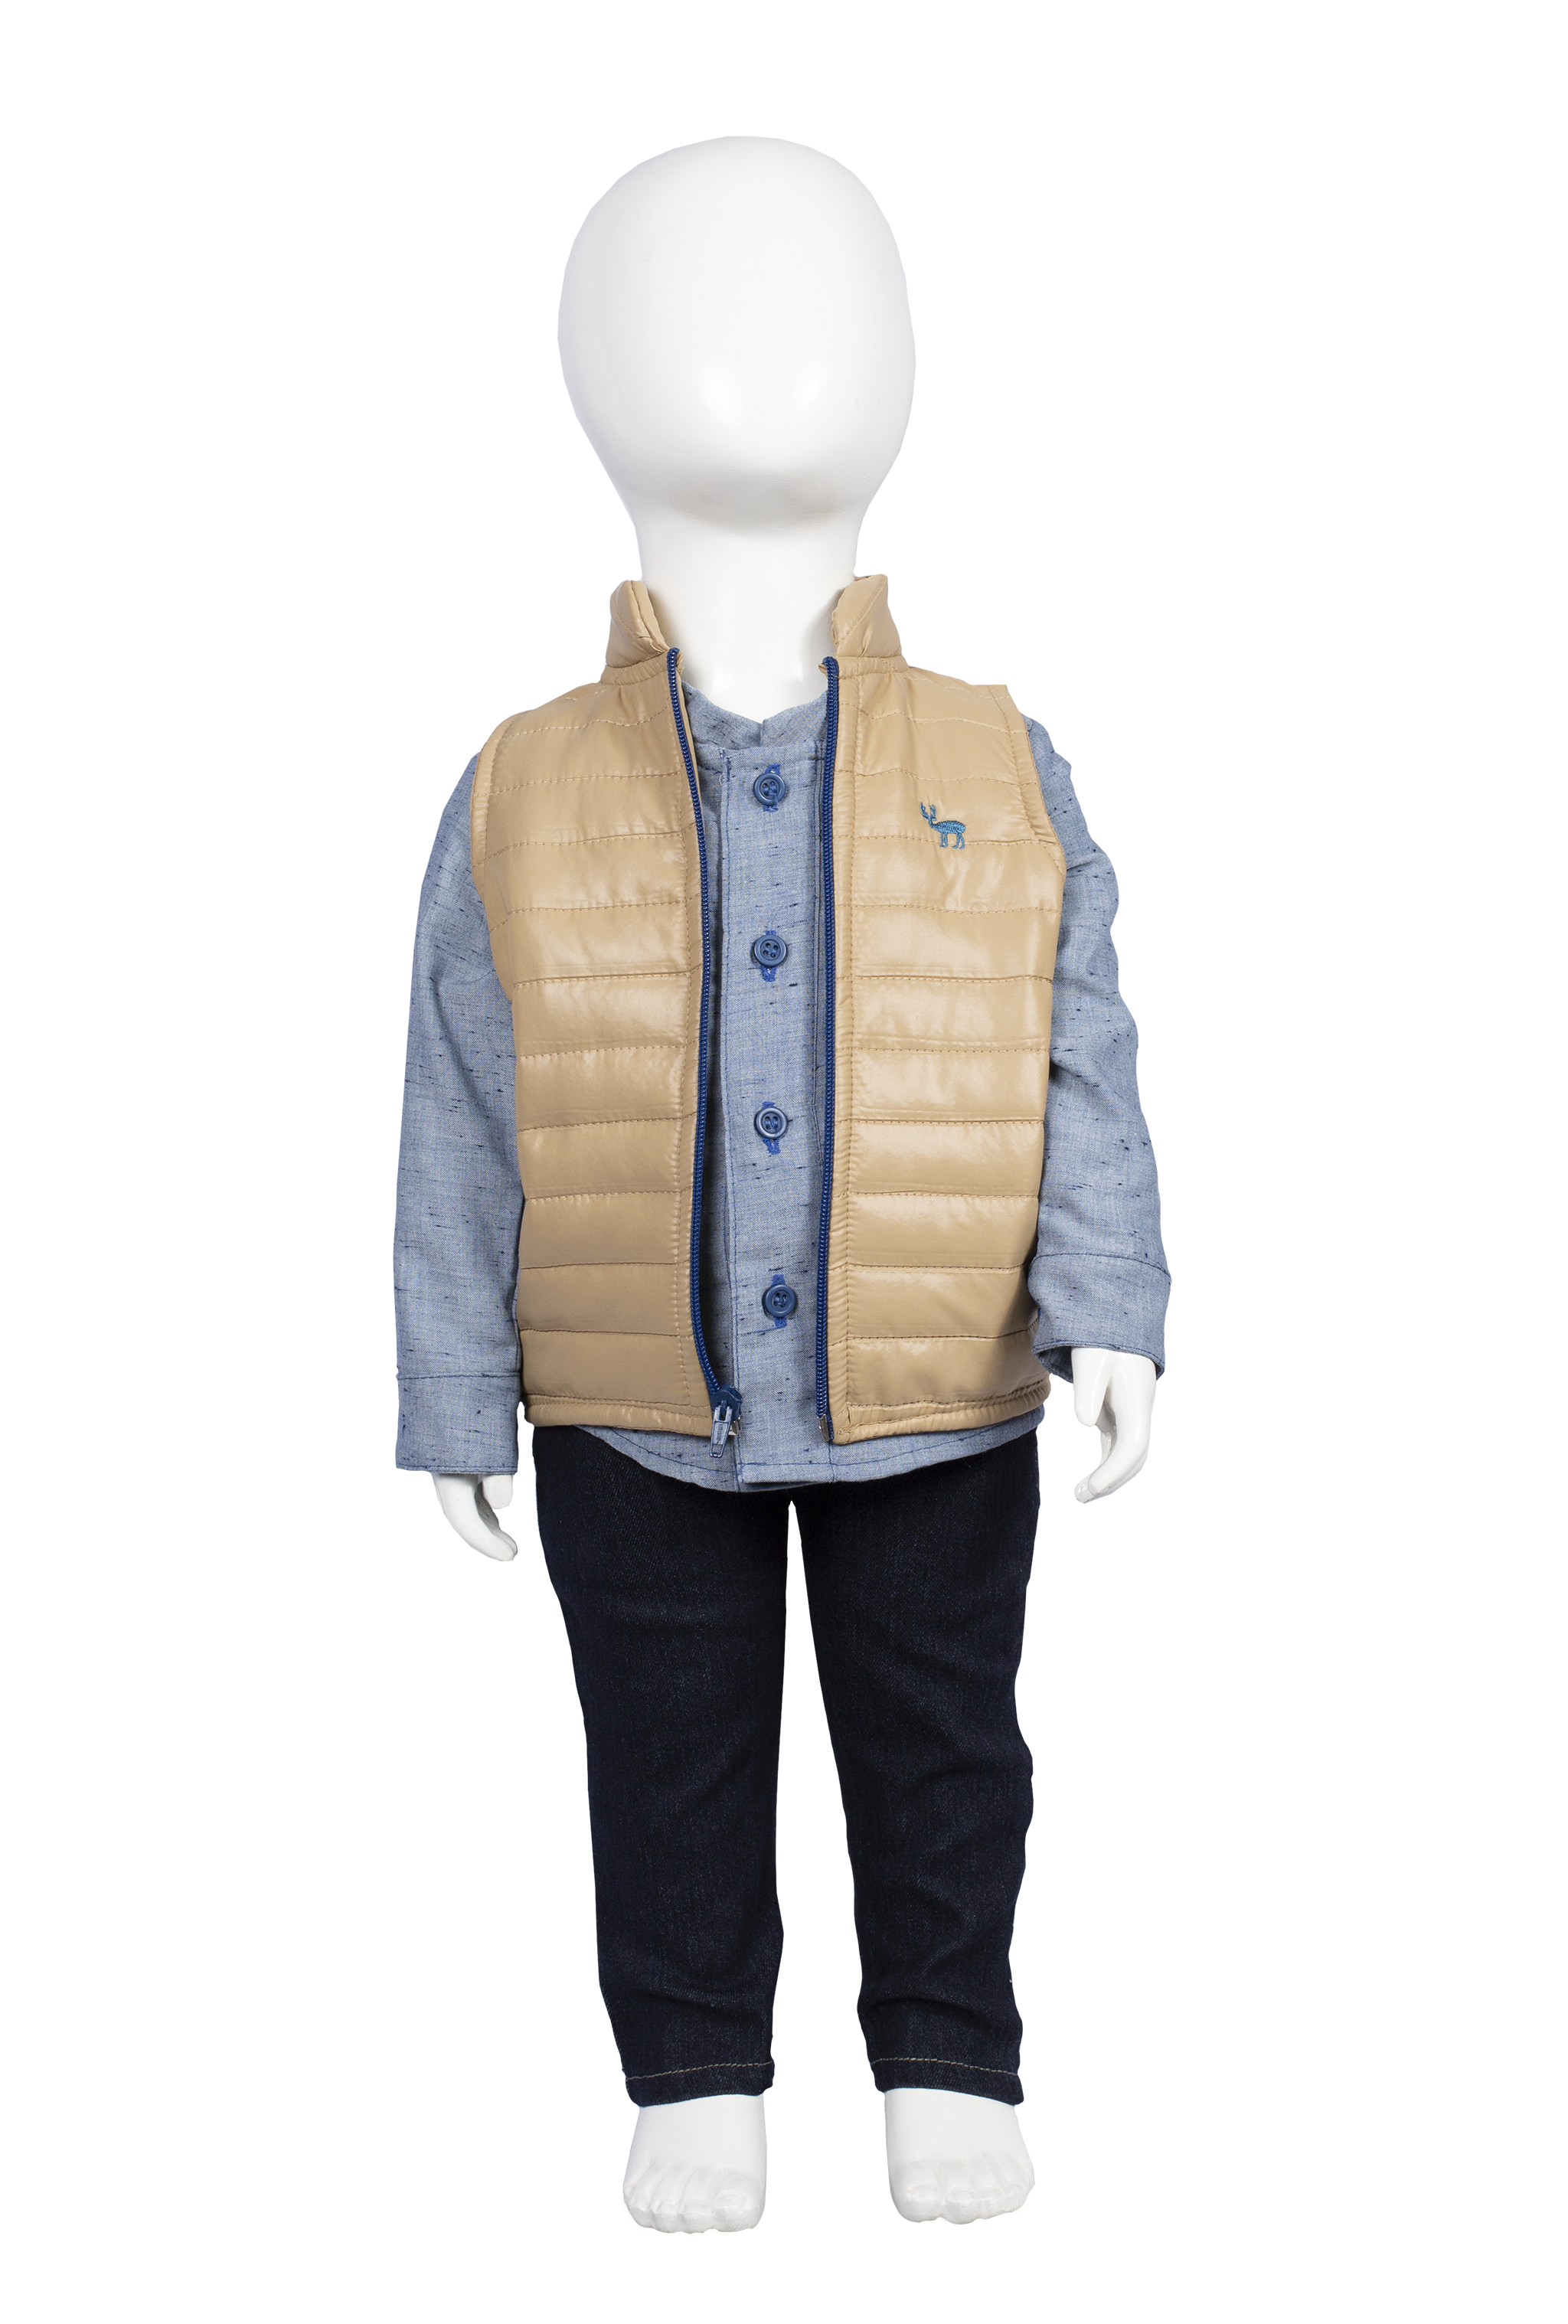 Conjunto de Chaleco , camisa y jeans Modelo # 5011